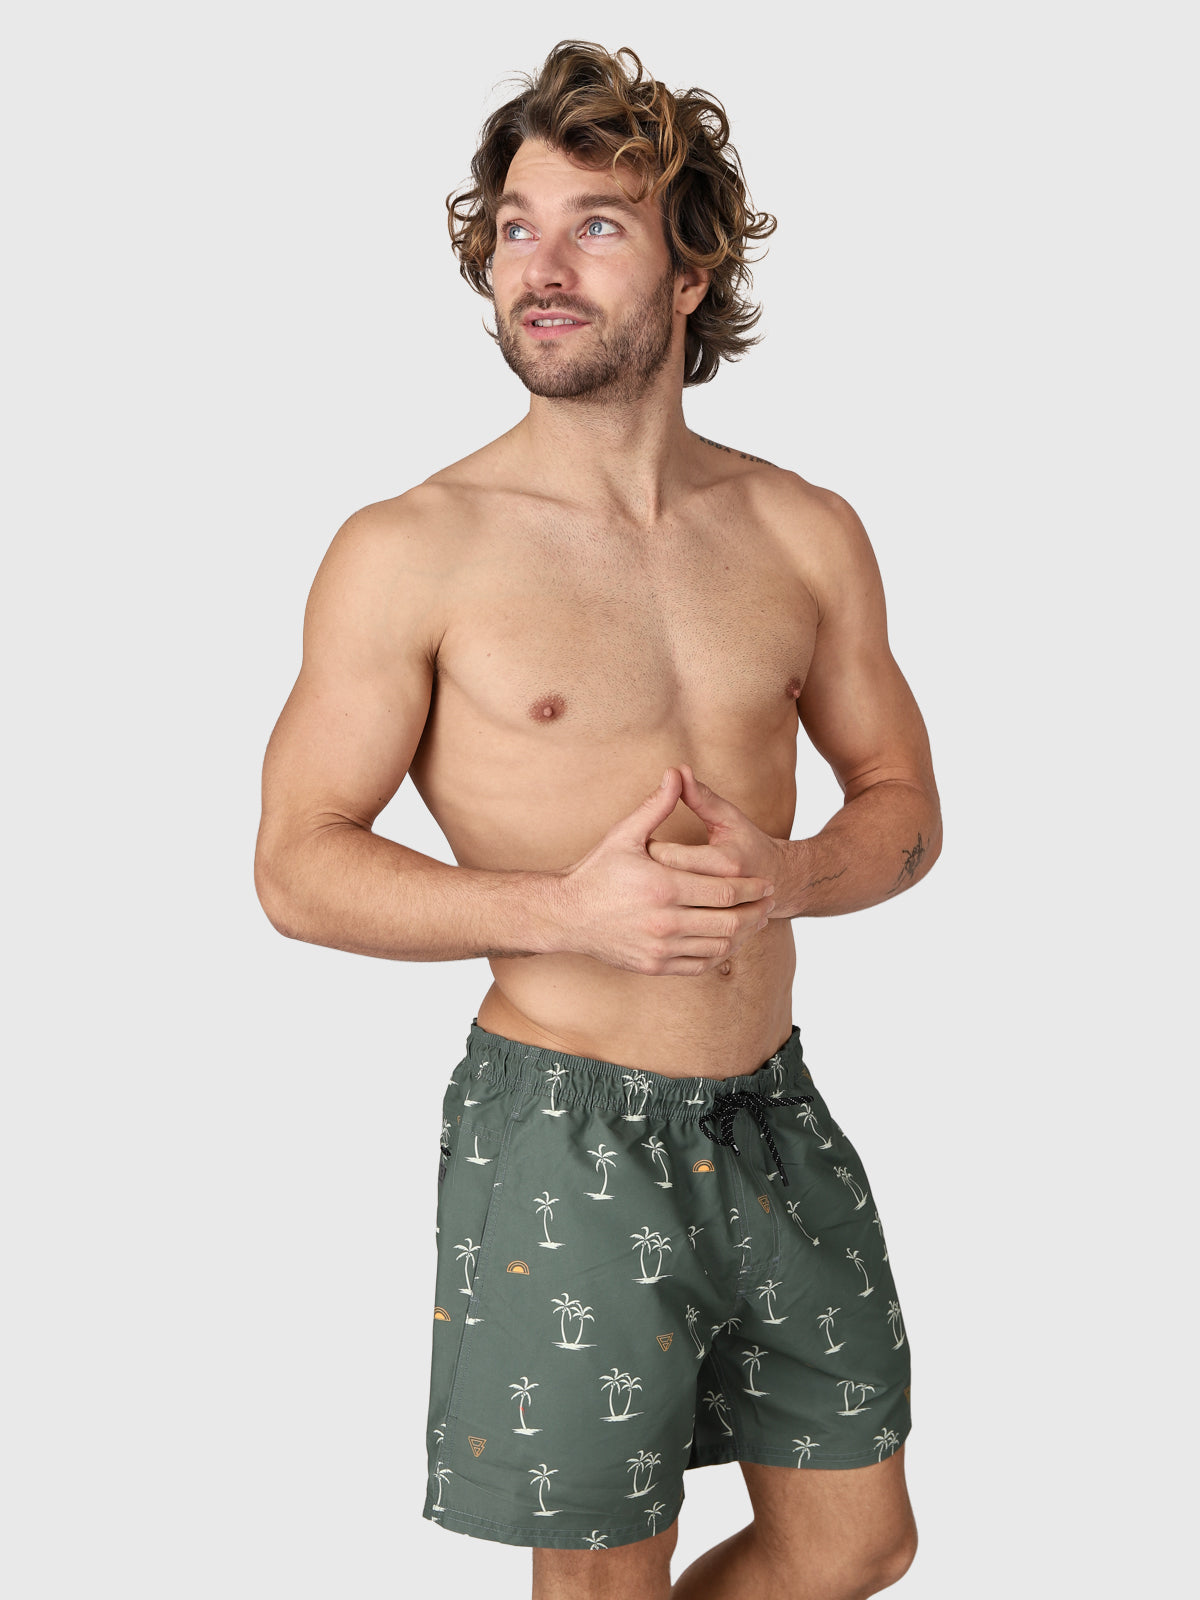 CrunECO-Mini-N Mens Swim Shorts | Green